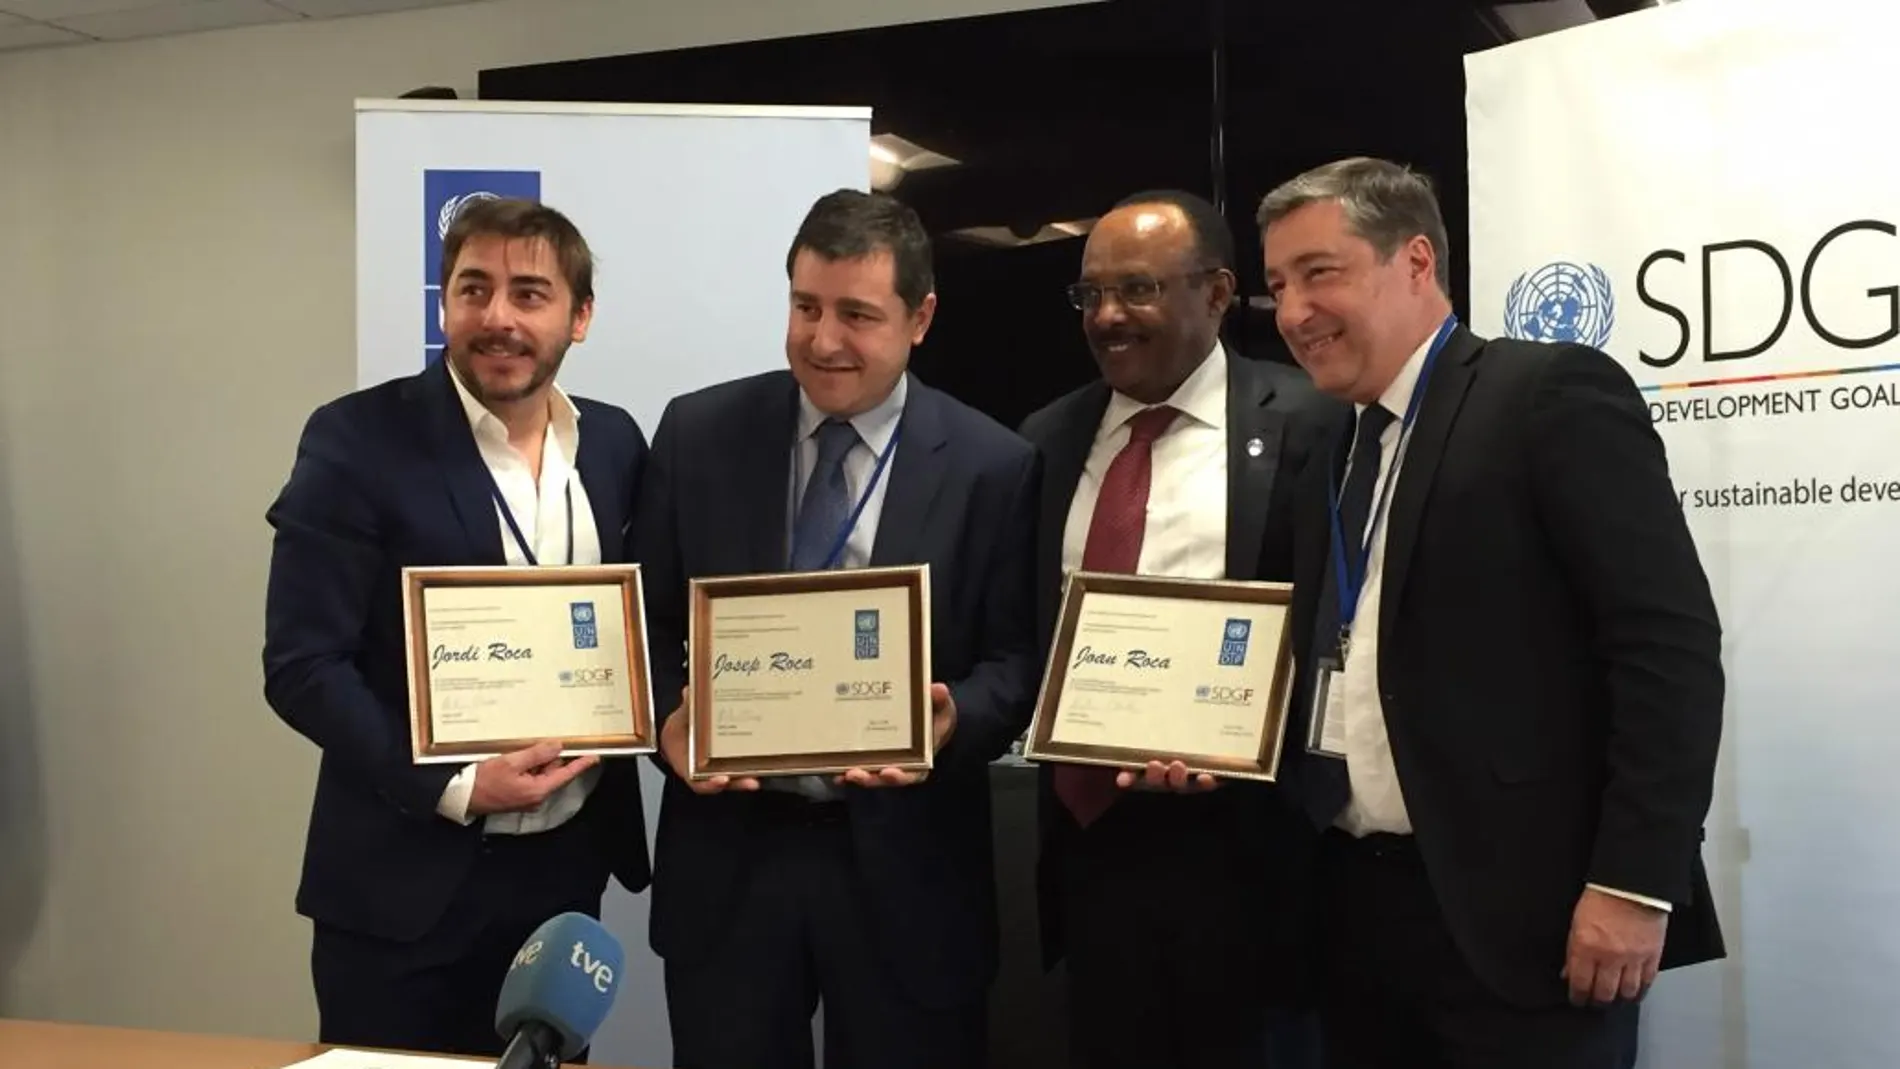 Los hermanos Roca, propietarios de restaurante español El Celler de Roca, Jordi, Josep y Joan Roca, reciben diplomas por parte del administrador asociado del Programa de Naciones Unidas para el Desarrollo (PNUD), Tegegnework Gettu